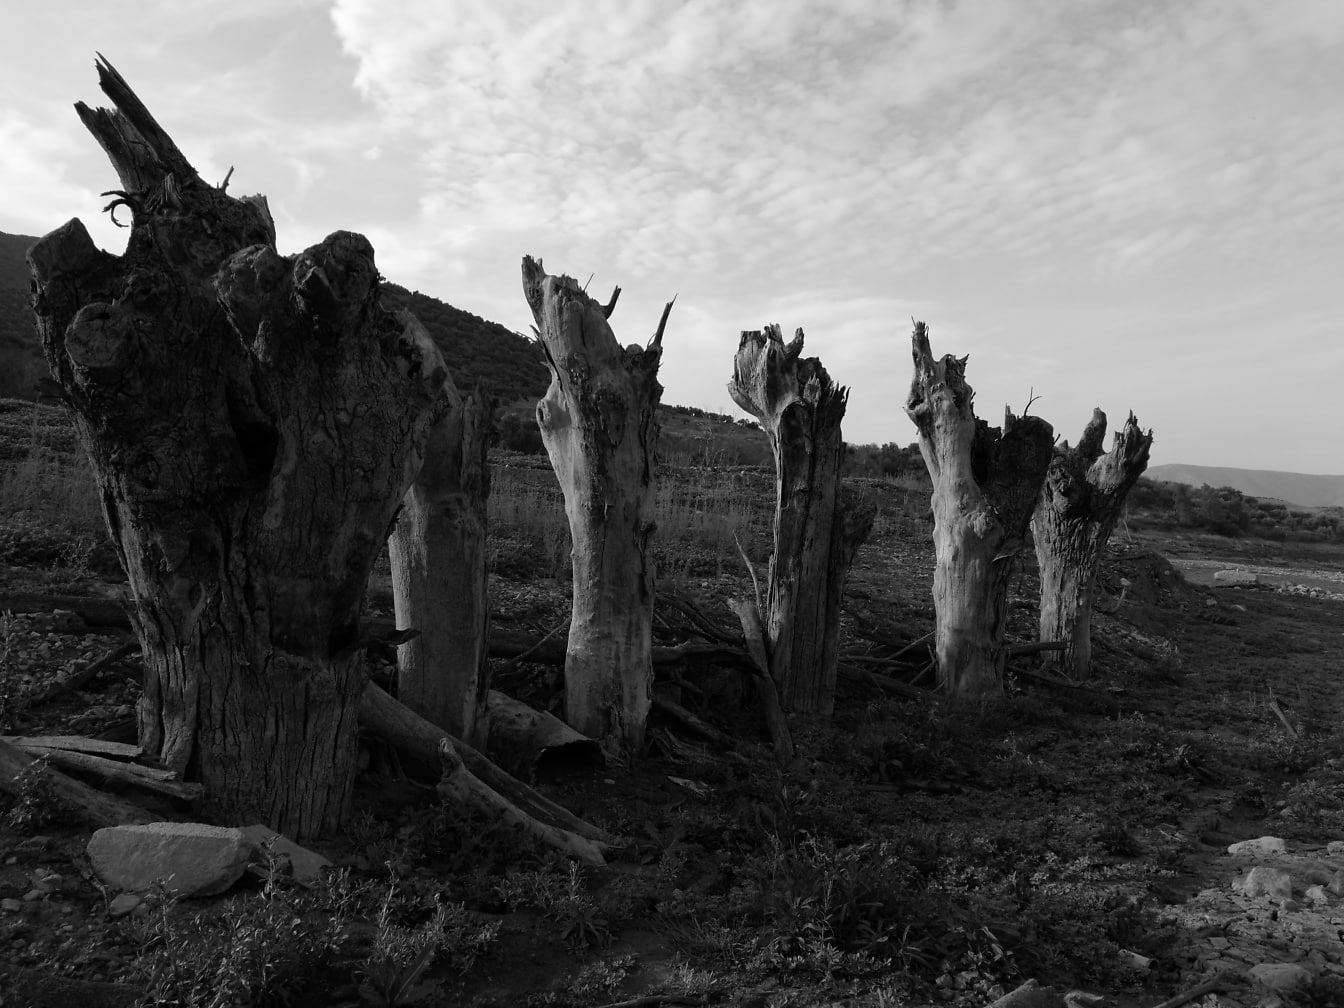 Rangée de vieux troncs d’arbres cassés séchés, photo en noir et blanc